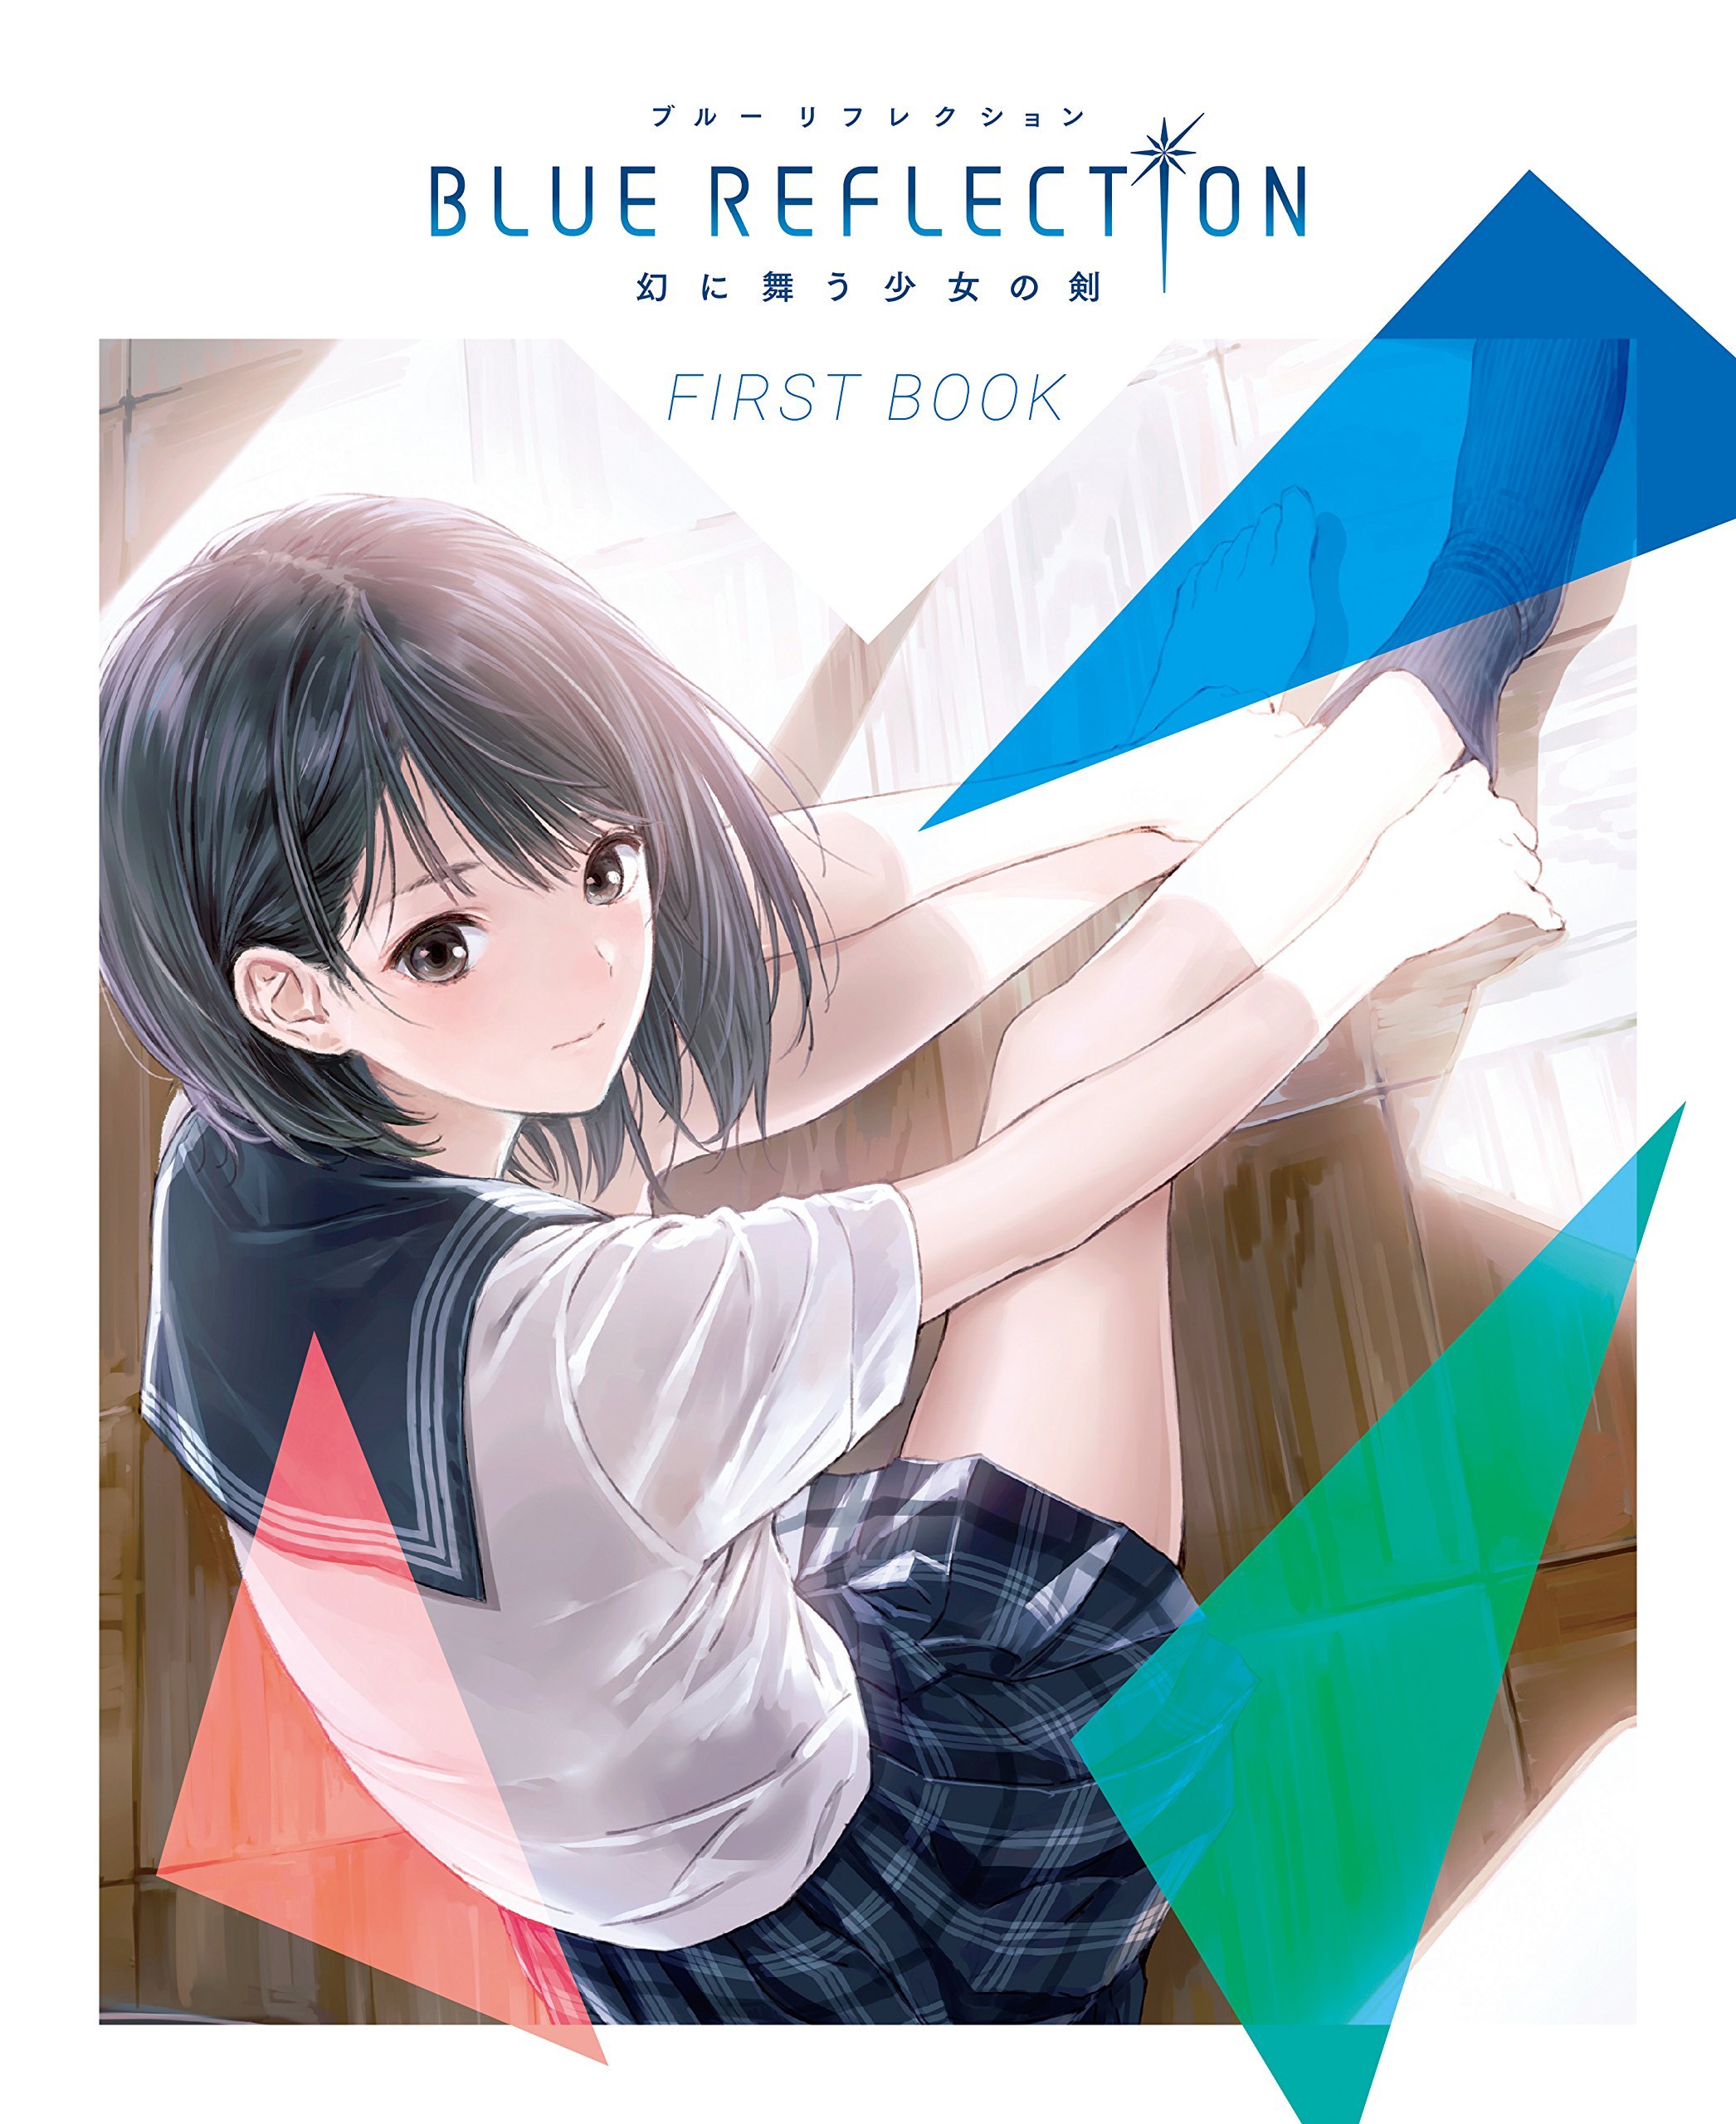 Blue Reflection - First Book (Vol.621 supplement) (September 15-29, 2016)